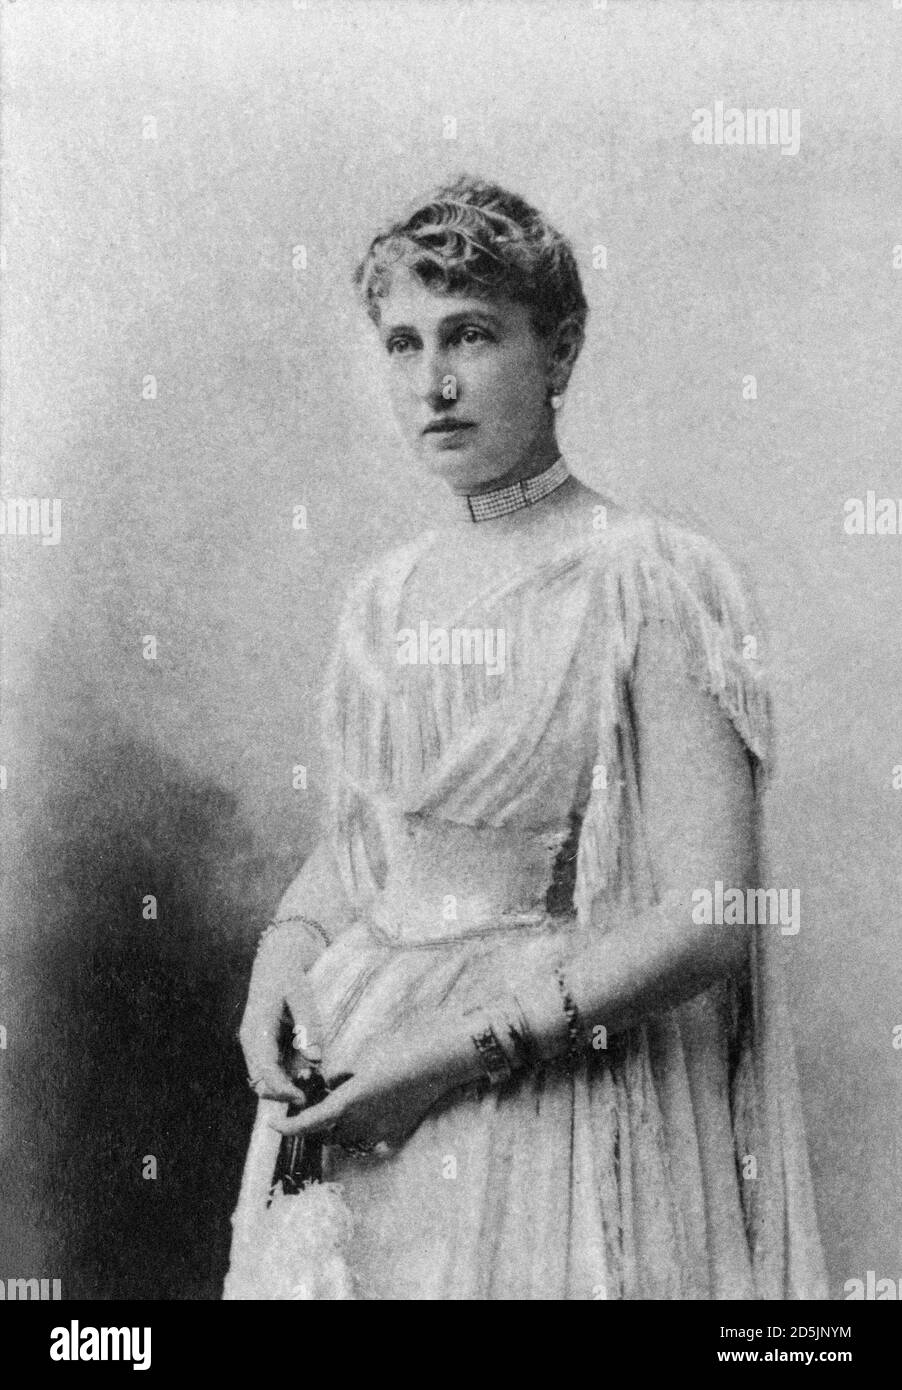 Alice Heine (1858 – 1925) è stata la principessa consorte americana di Monaco, sposata con il principe Alberto i di Monaco. Marcel Proust la usò come modello Foto Stock